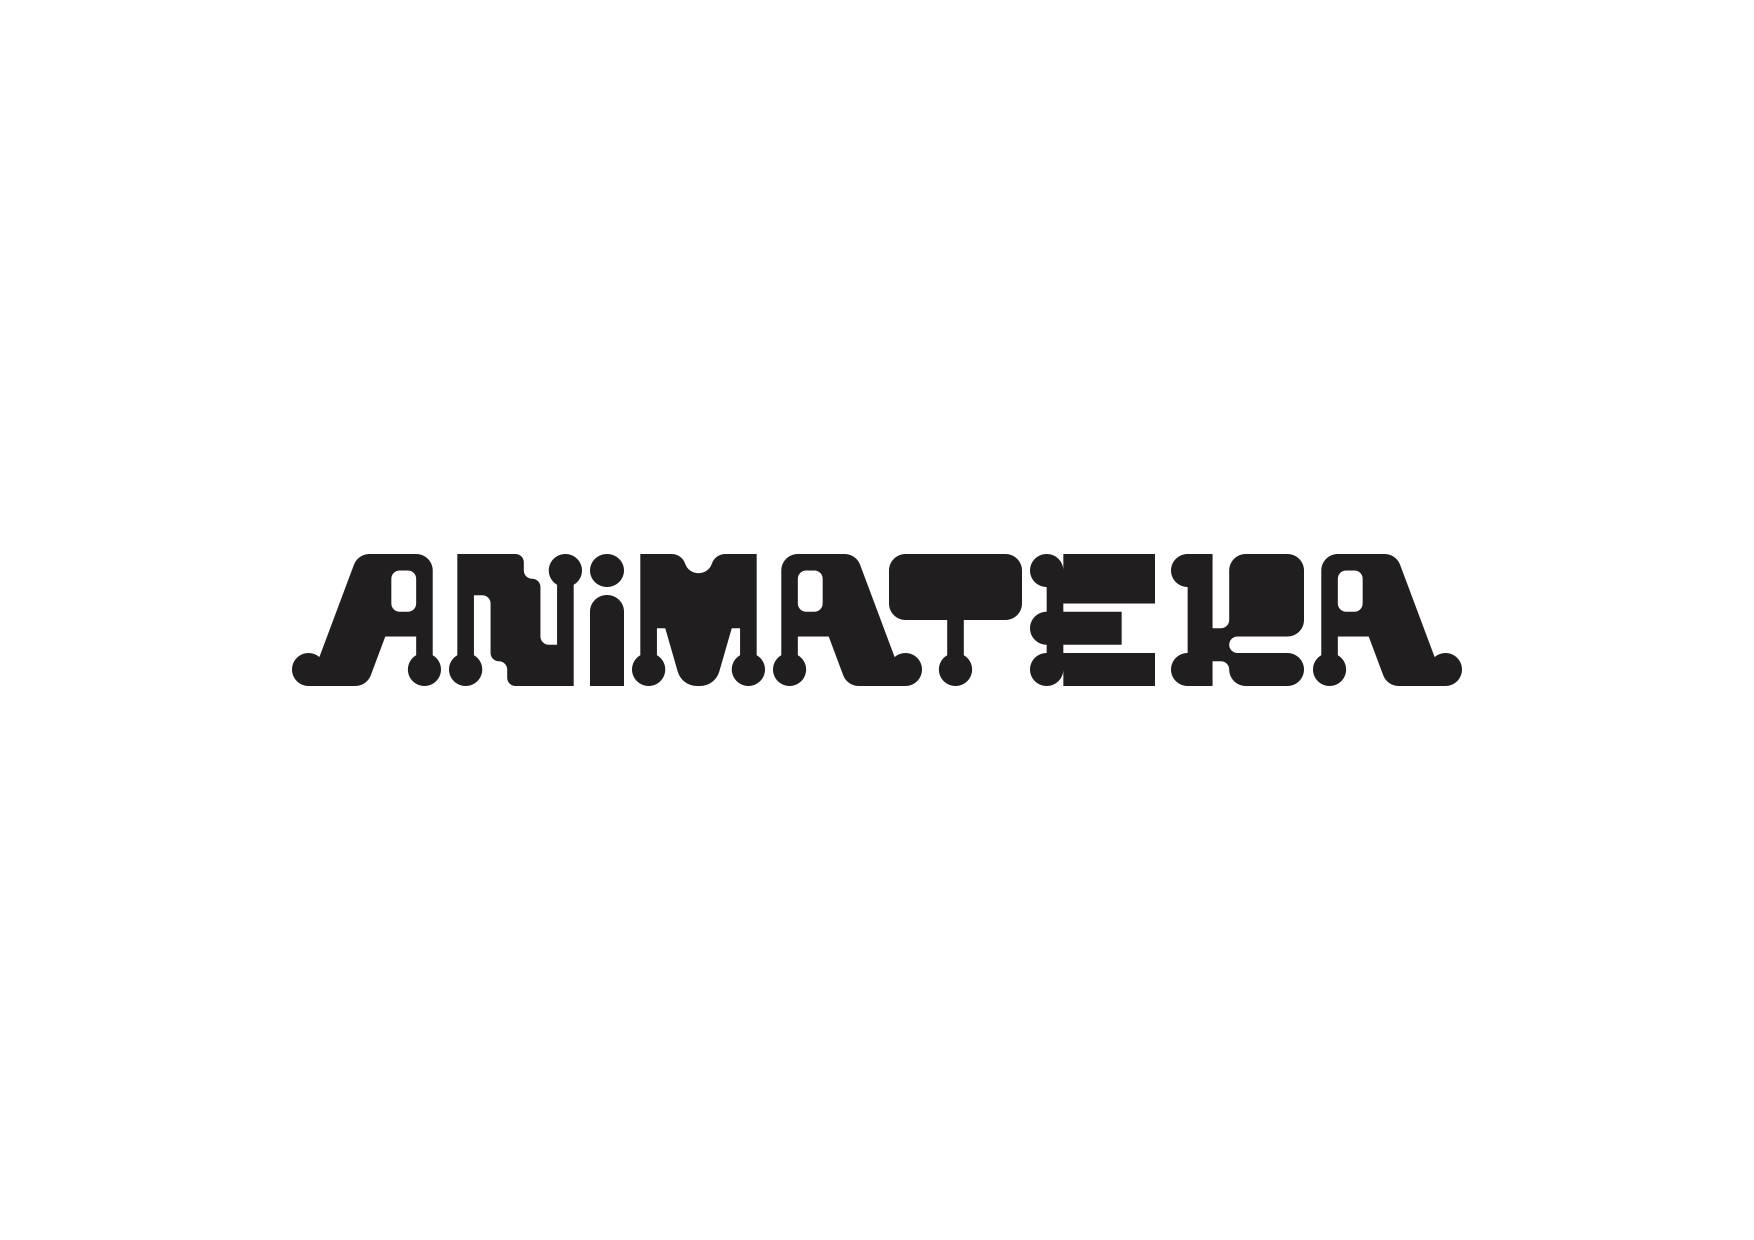 18. Mednarodni festival animiranega filma Animateka